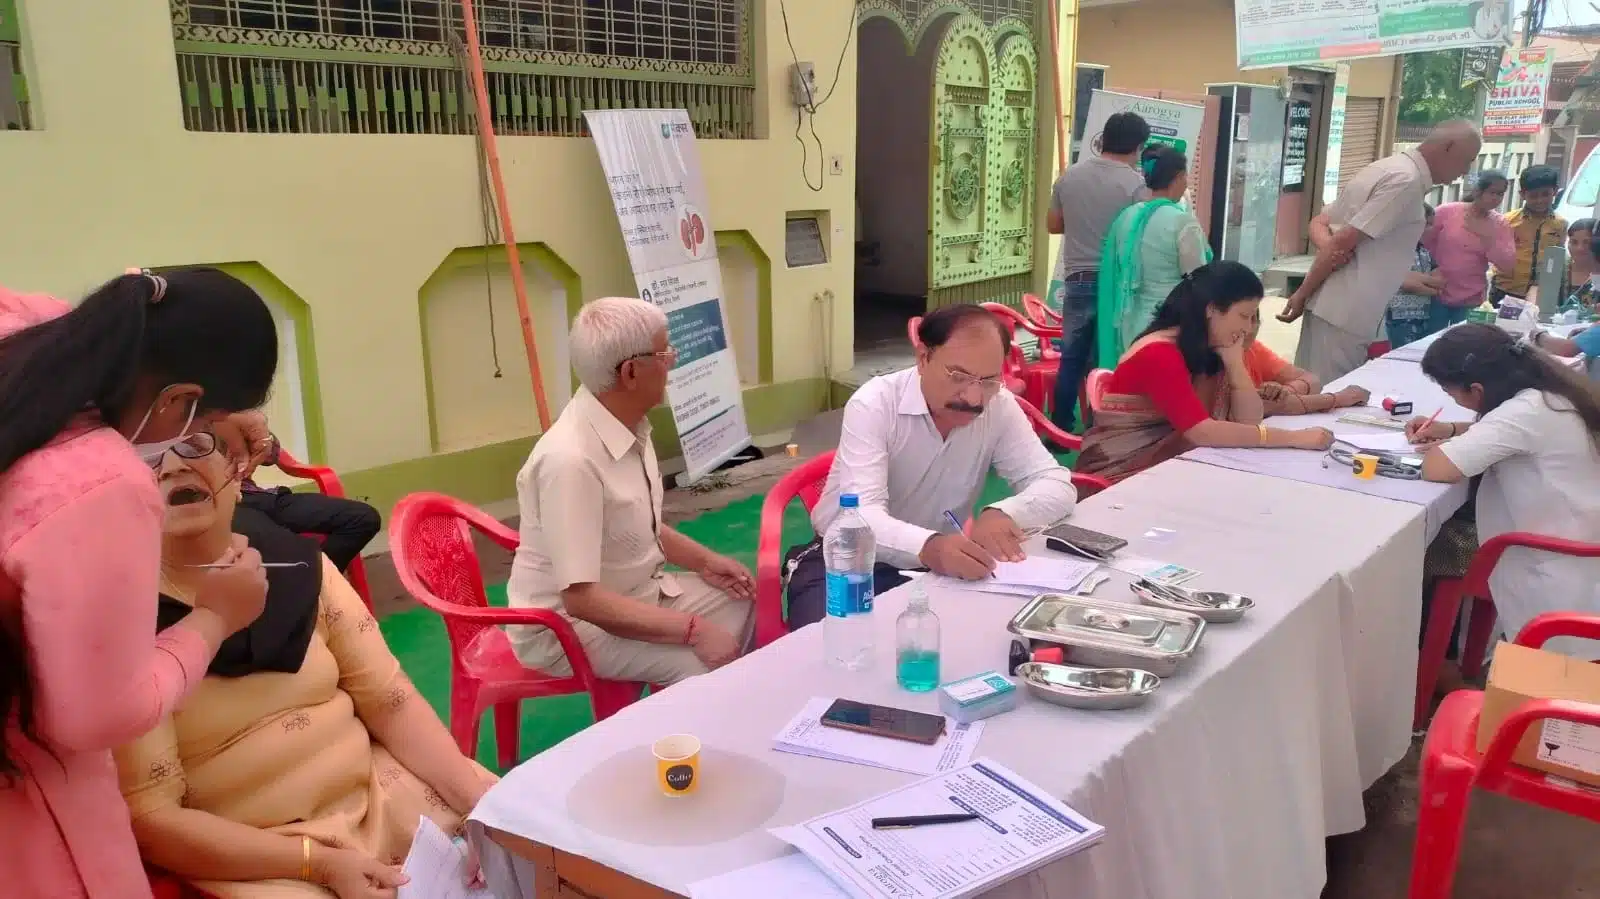 श्री नगर में हेल्थ चैकअप कैंप का हुआ आयोजन, 115 लोगों ने लिया लाभ